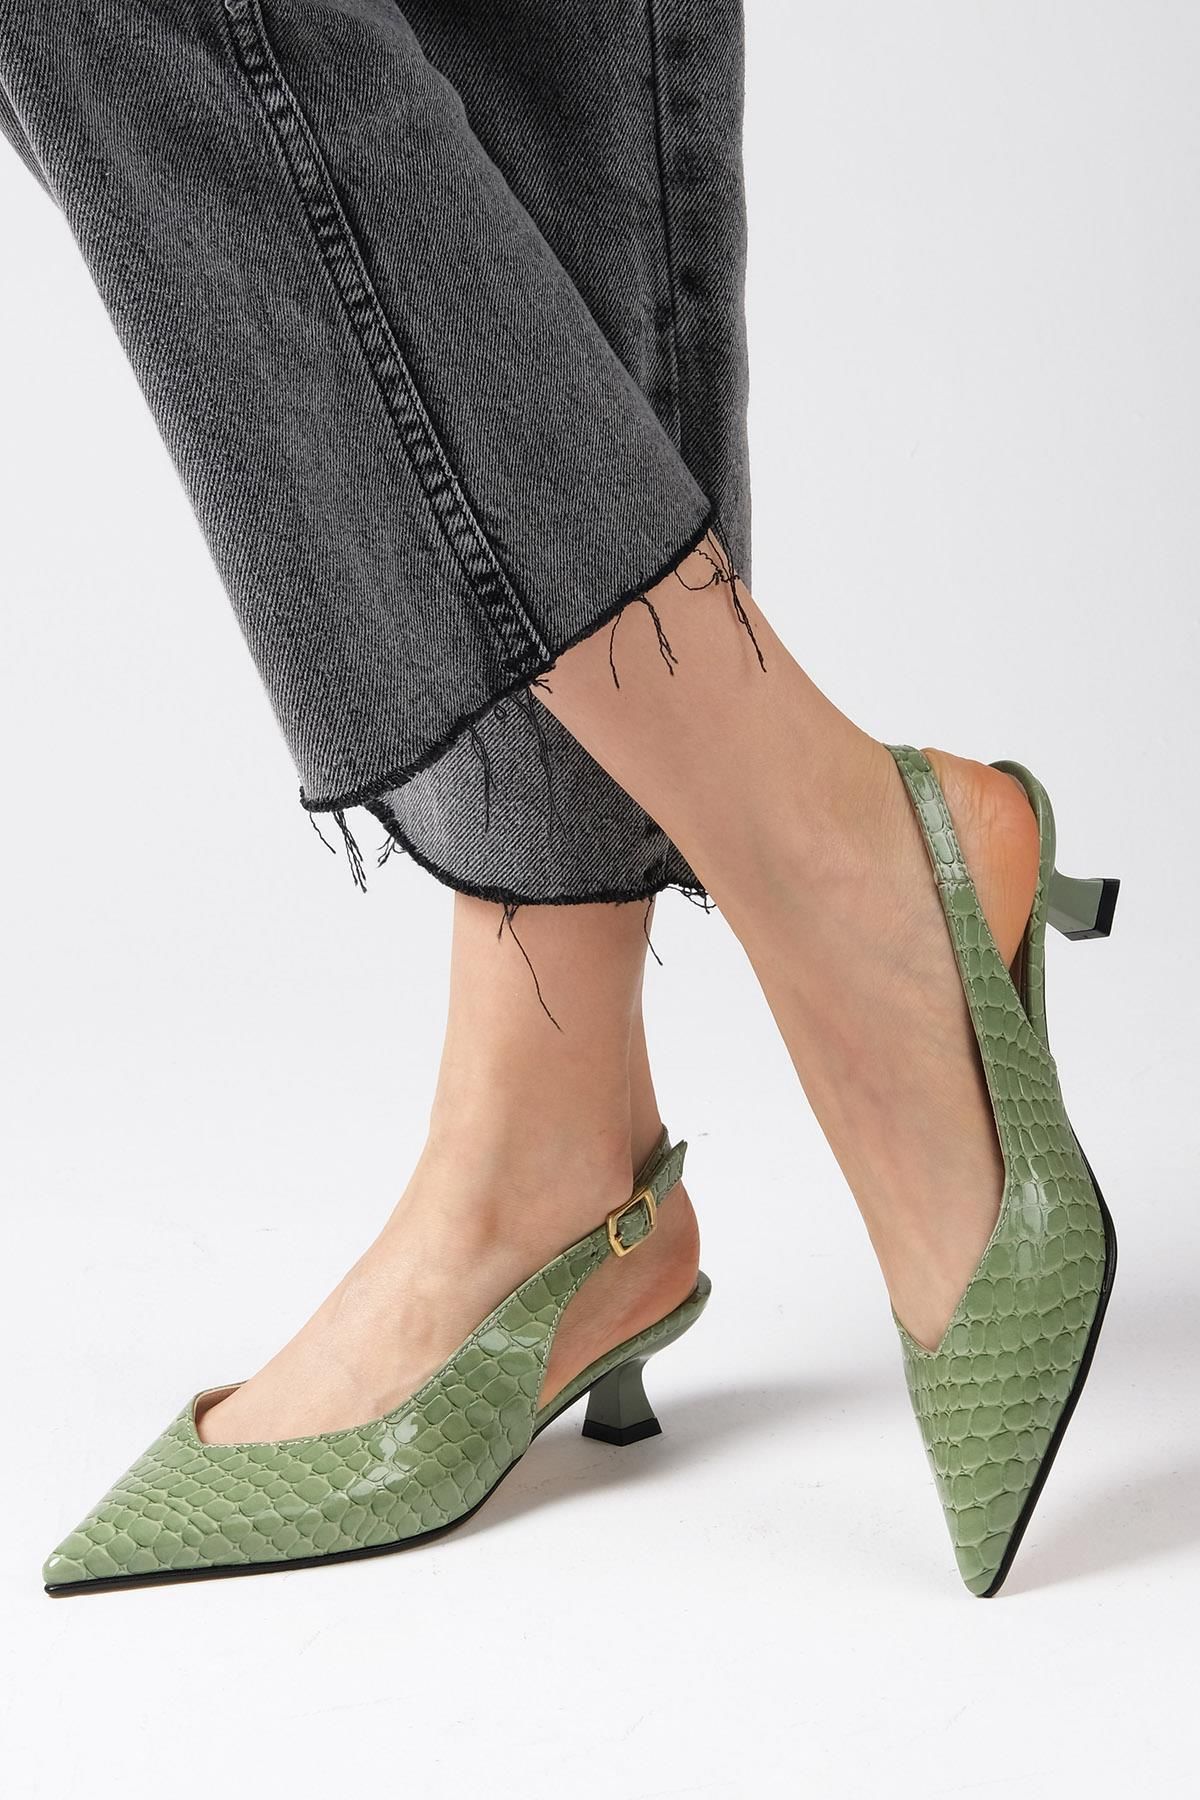 Mio Gusto Nancy Yeşil Renk Arkası Açık Kısa Topuklu Ayakkabı